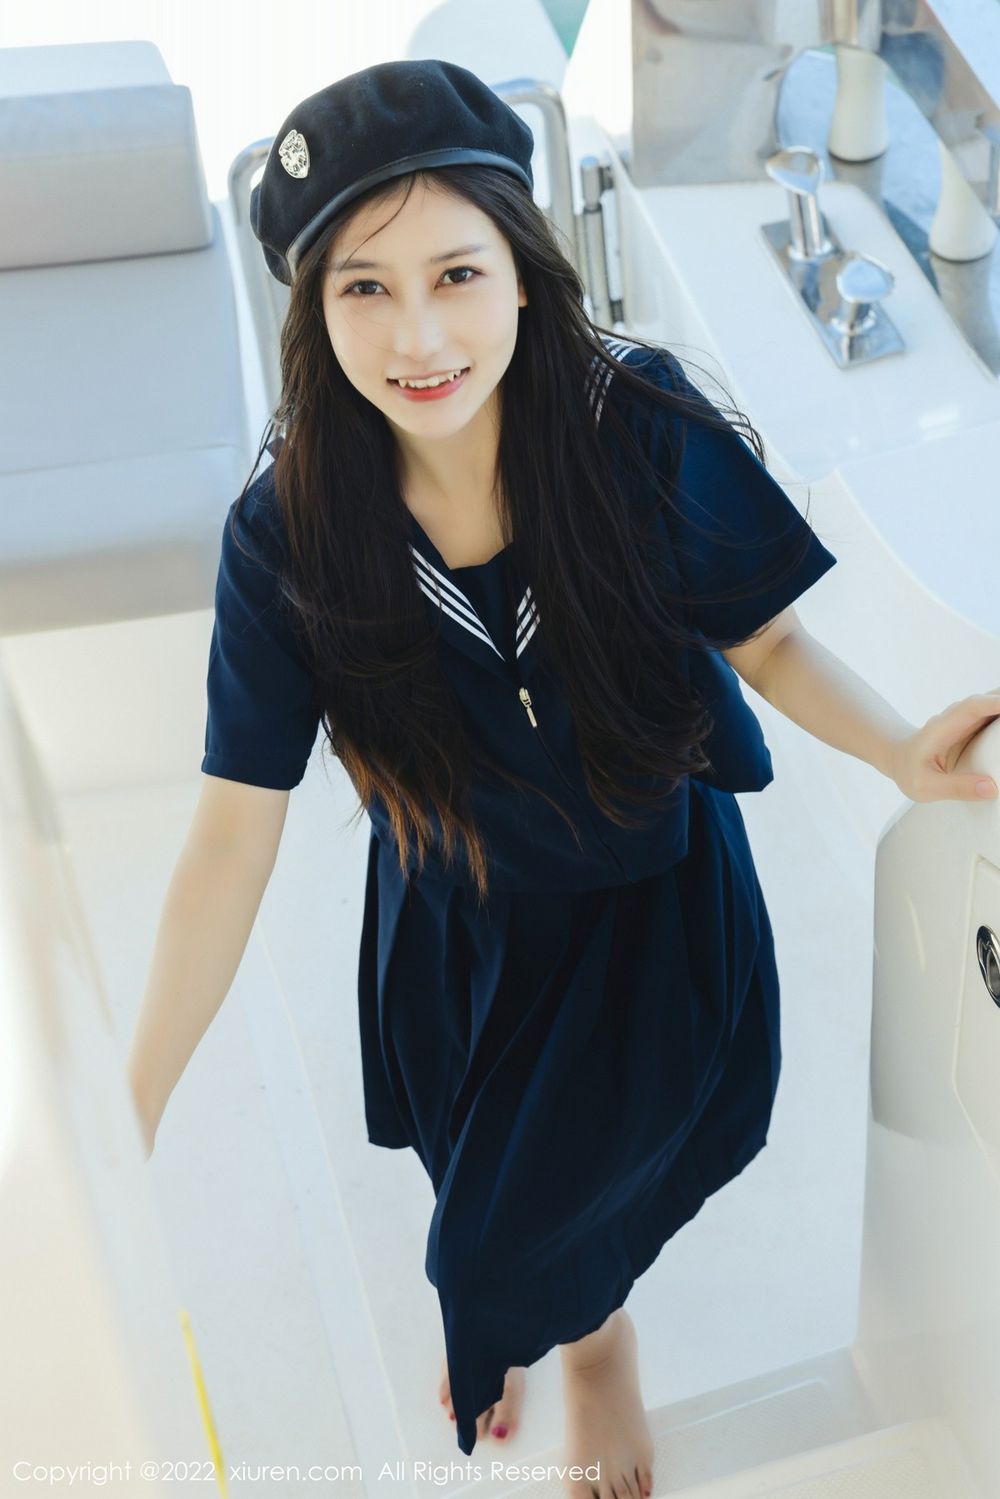 美女模特尹甜甜深色长裙制服海上游艇拍摄三亚旅拍